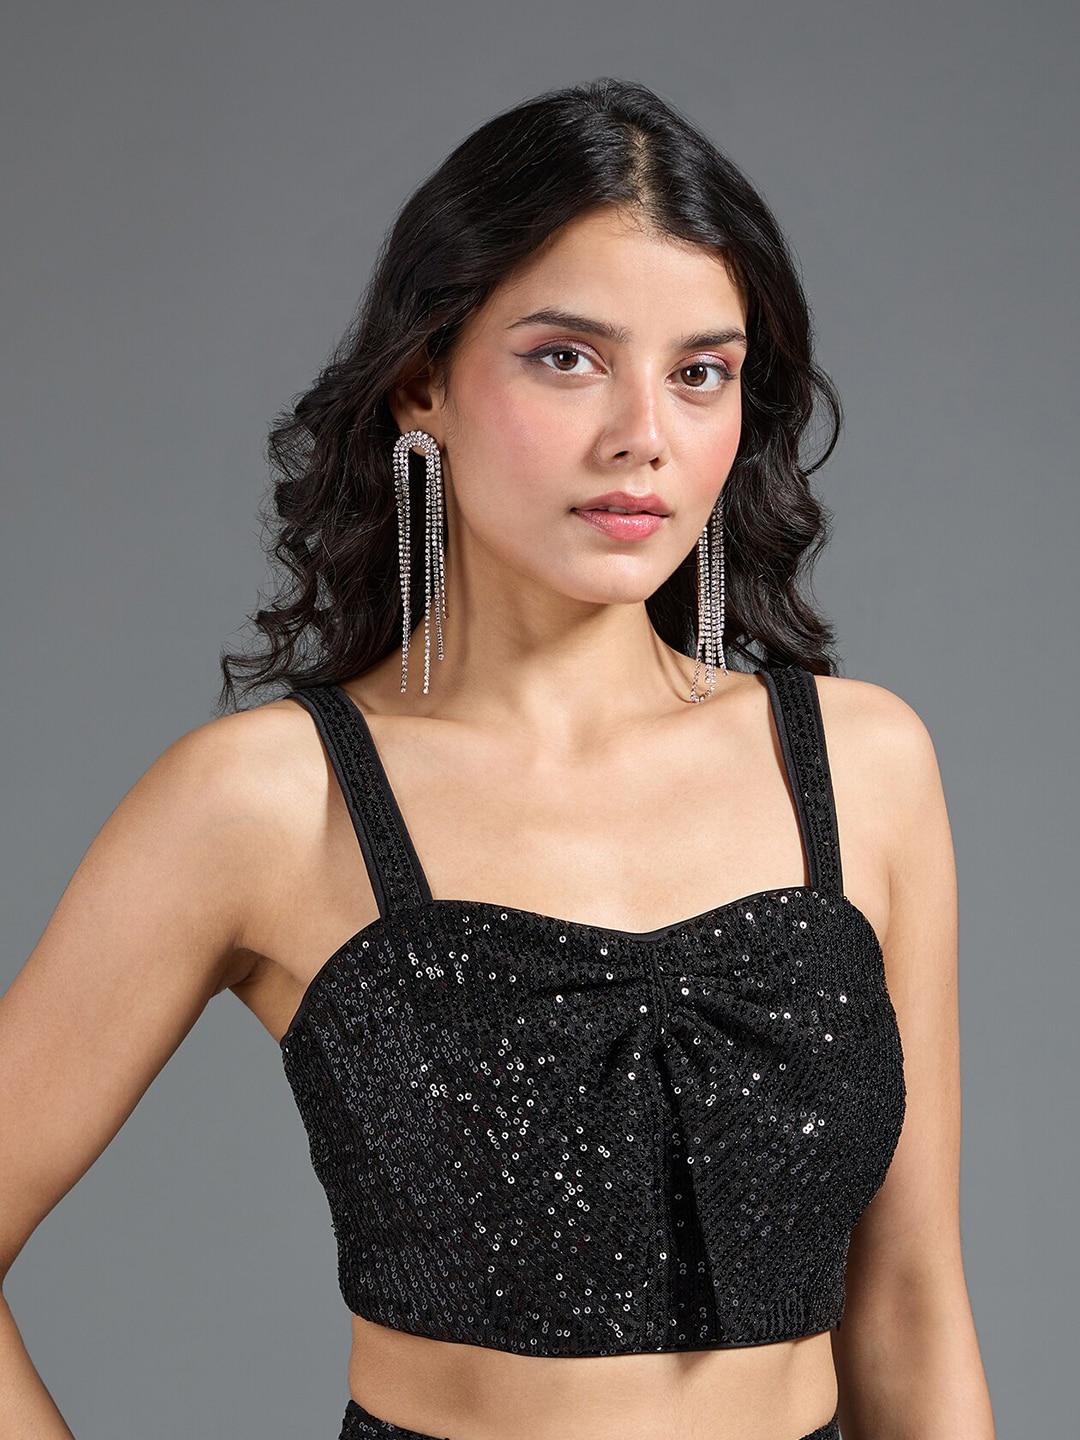 20dresses-black-embellished-sequined-bralette-crop-top